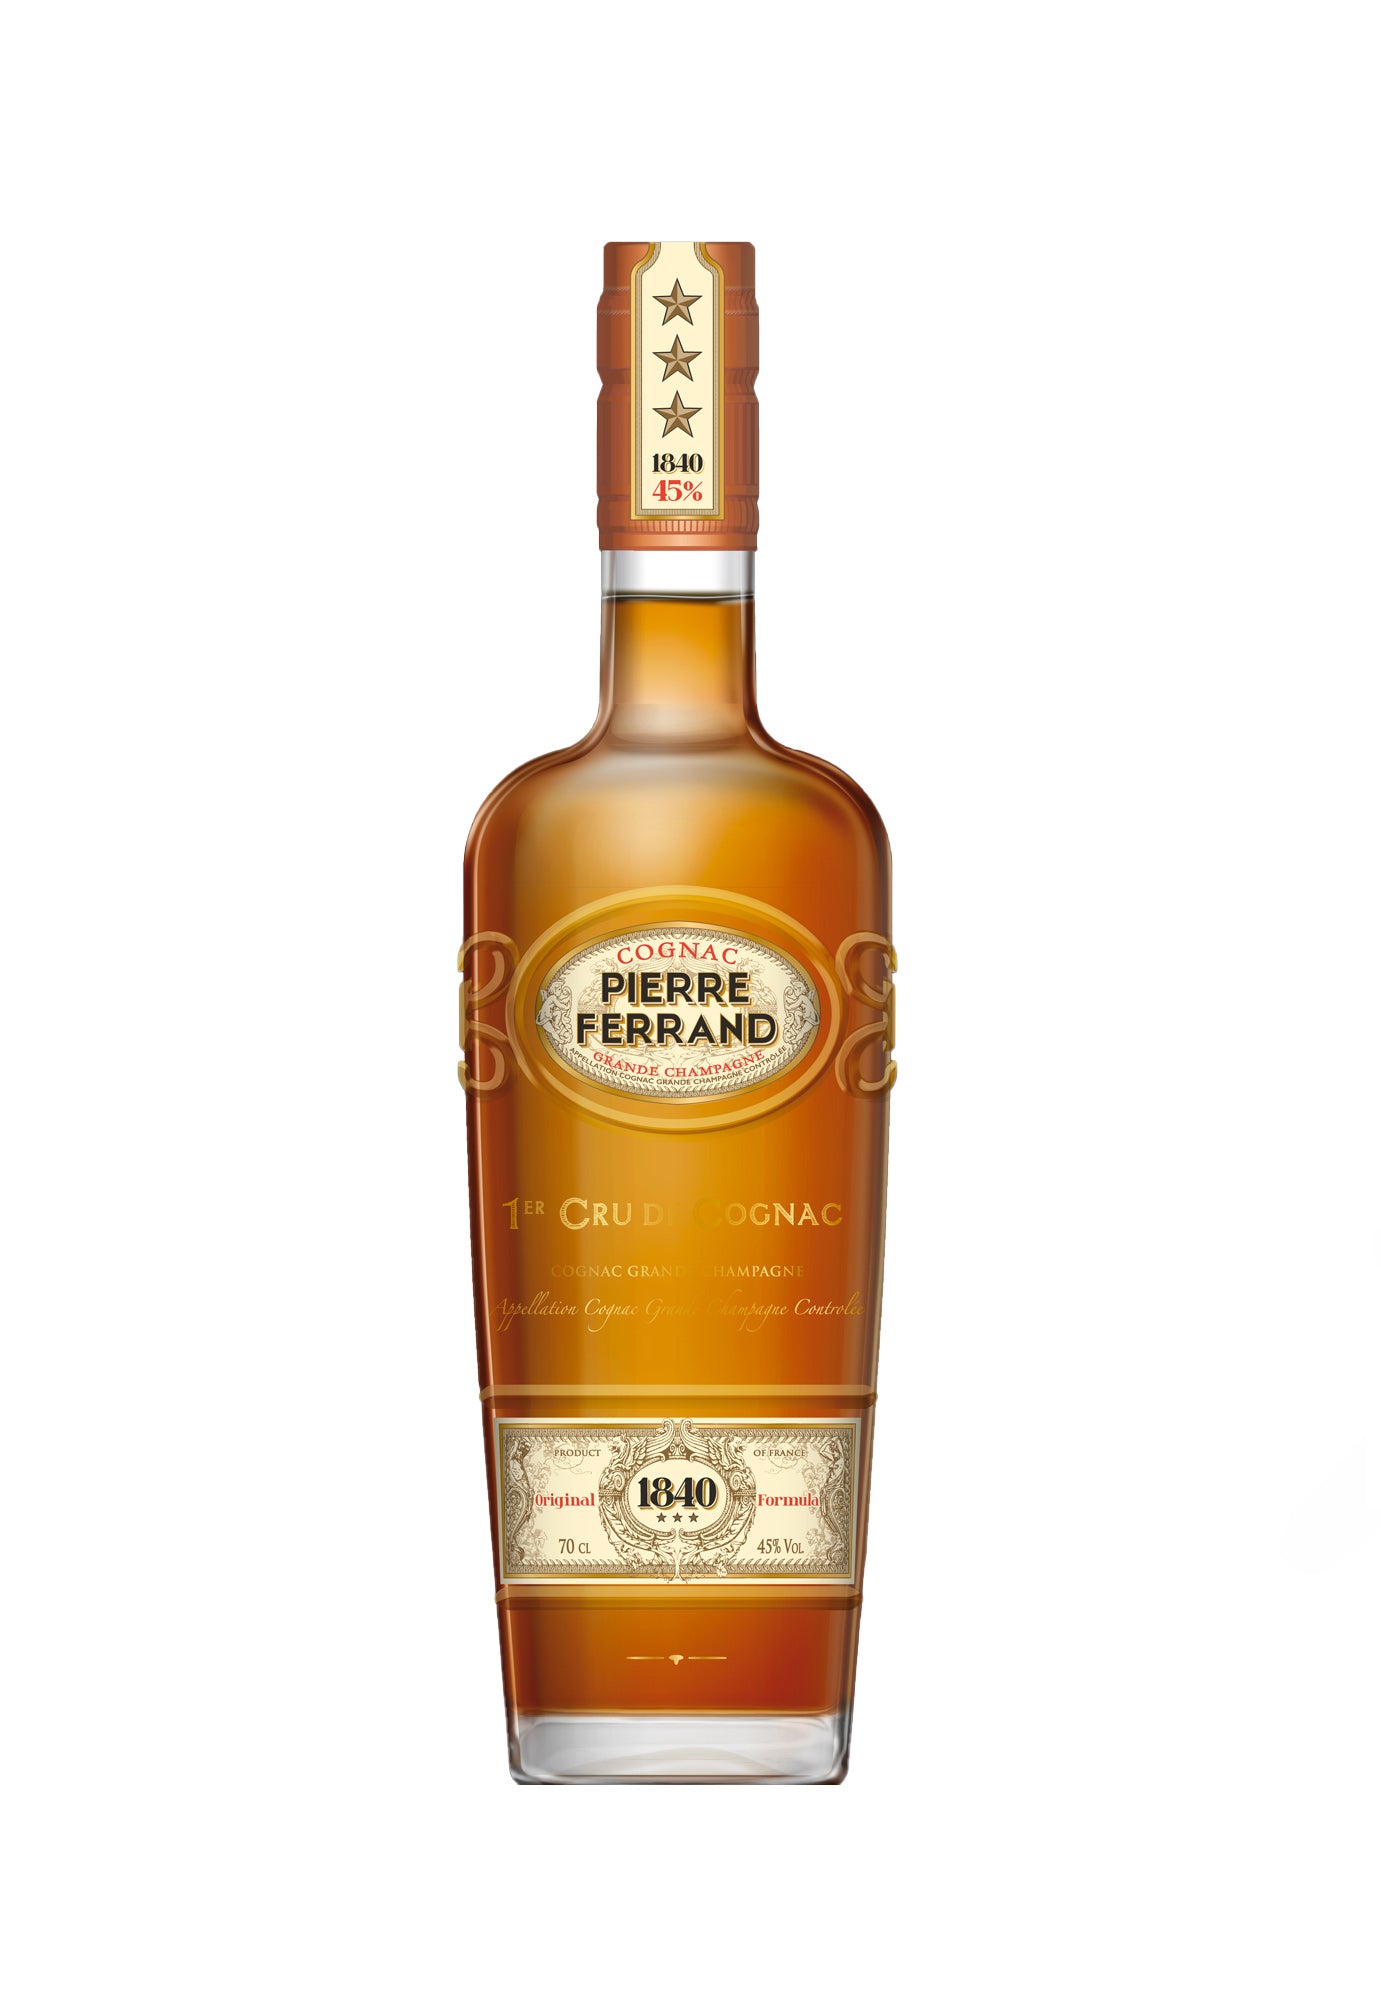 Pierre Ferrand 1840 Cognac